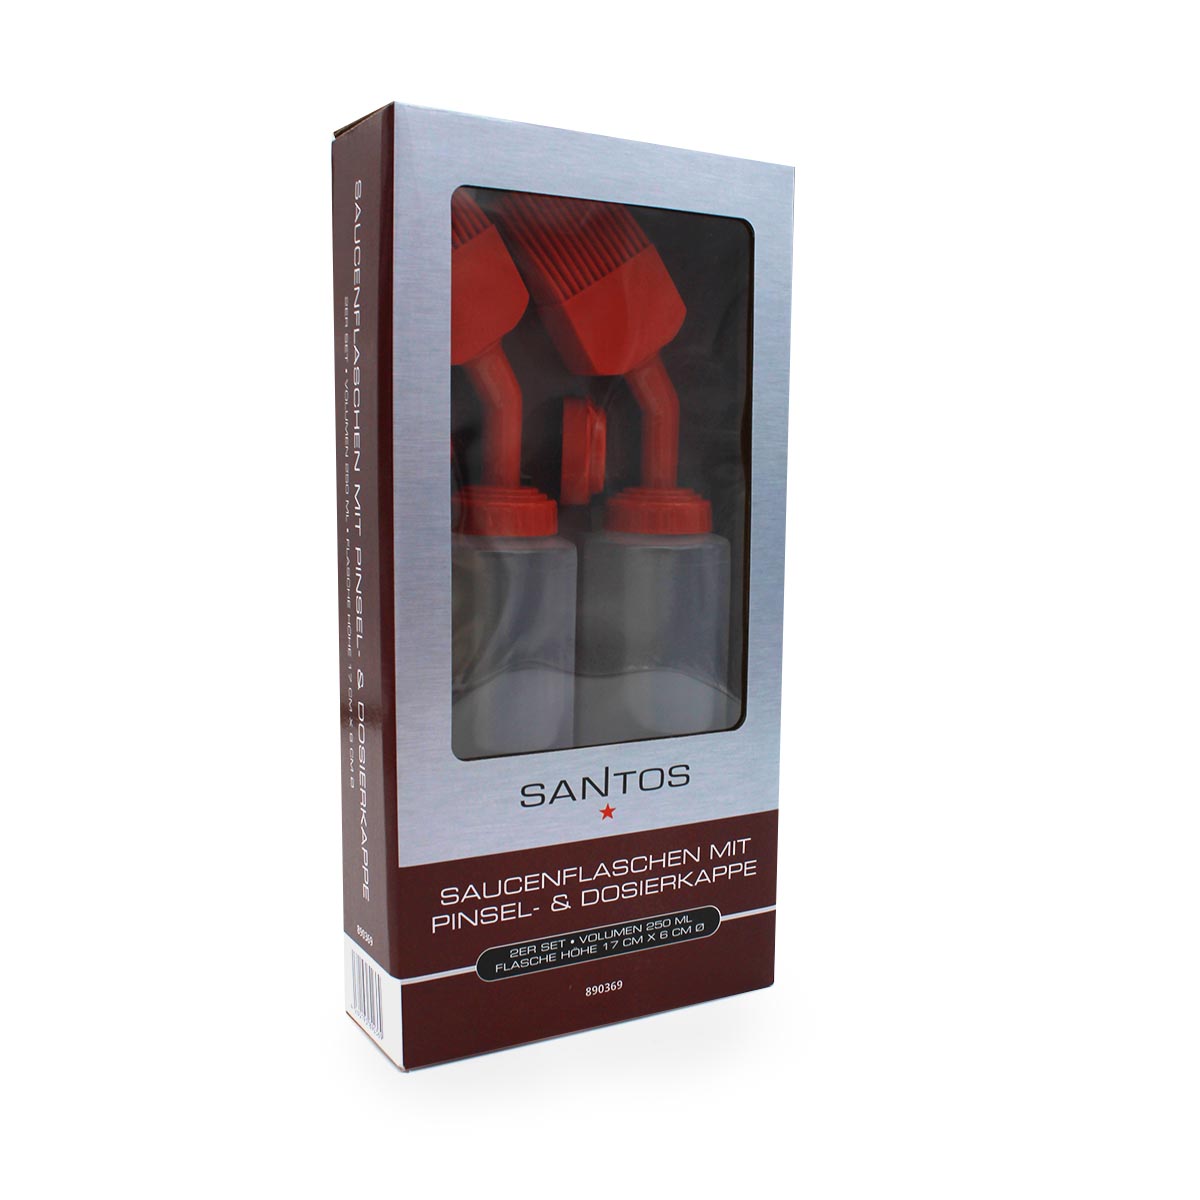 SANTOS Saucenflaschen mit Pinsel- & Dosierkappe, 2er Set